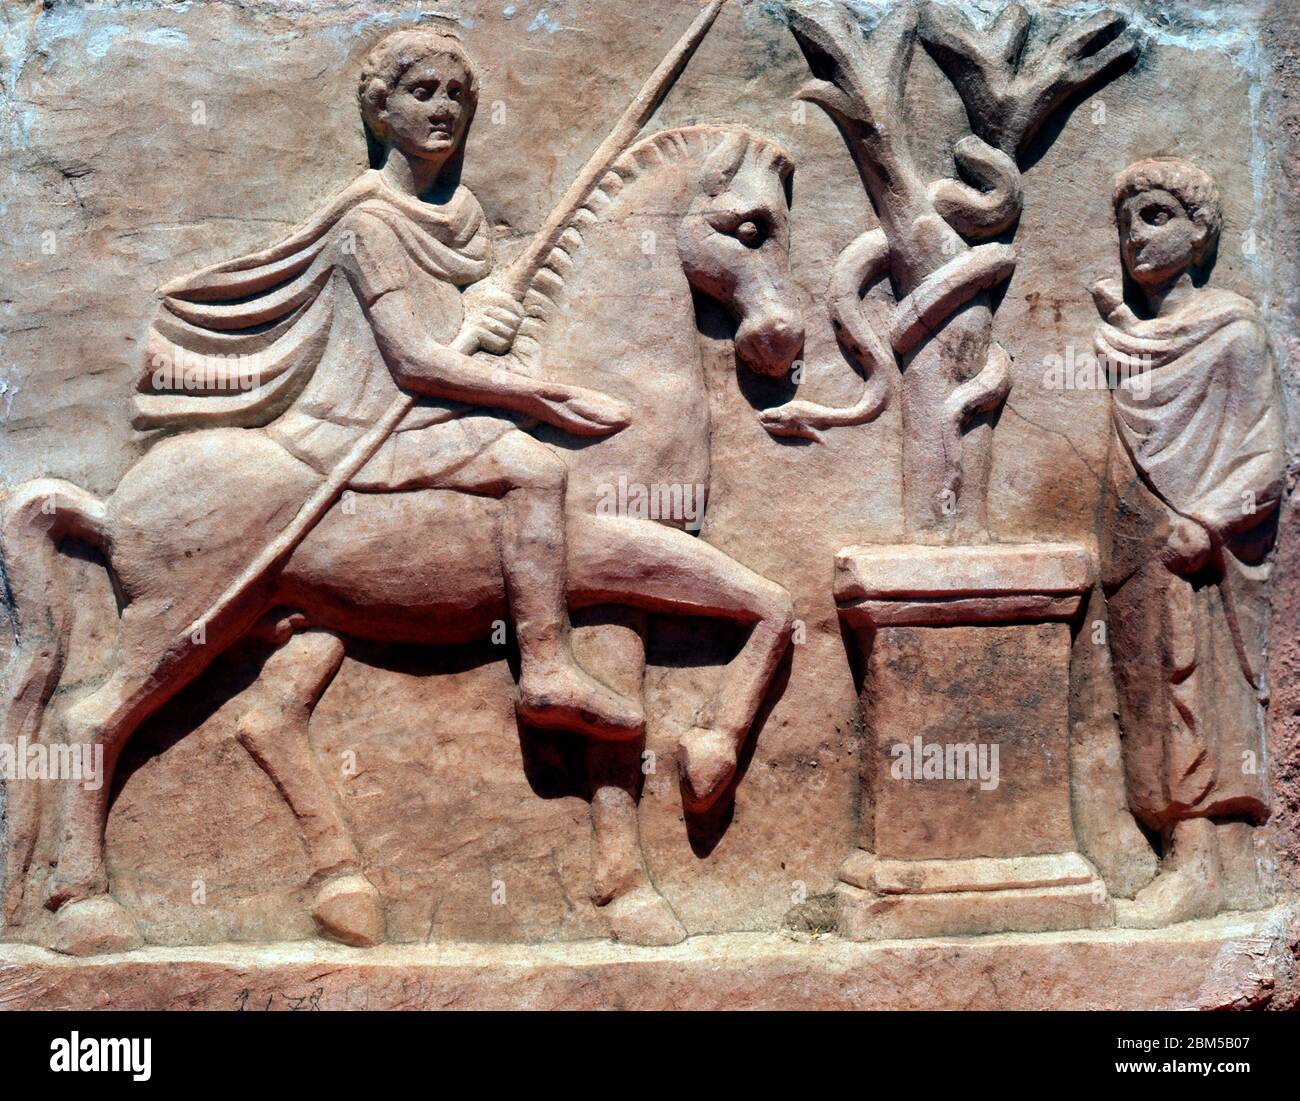 Ephèse, Turquie, relief héroïque, hellénistique 1er siècle av. J.-C., sanctuaire de maison trouvé dans une villa romaine Banque D'Images